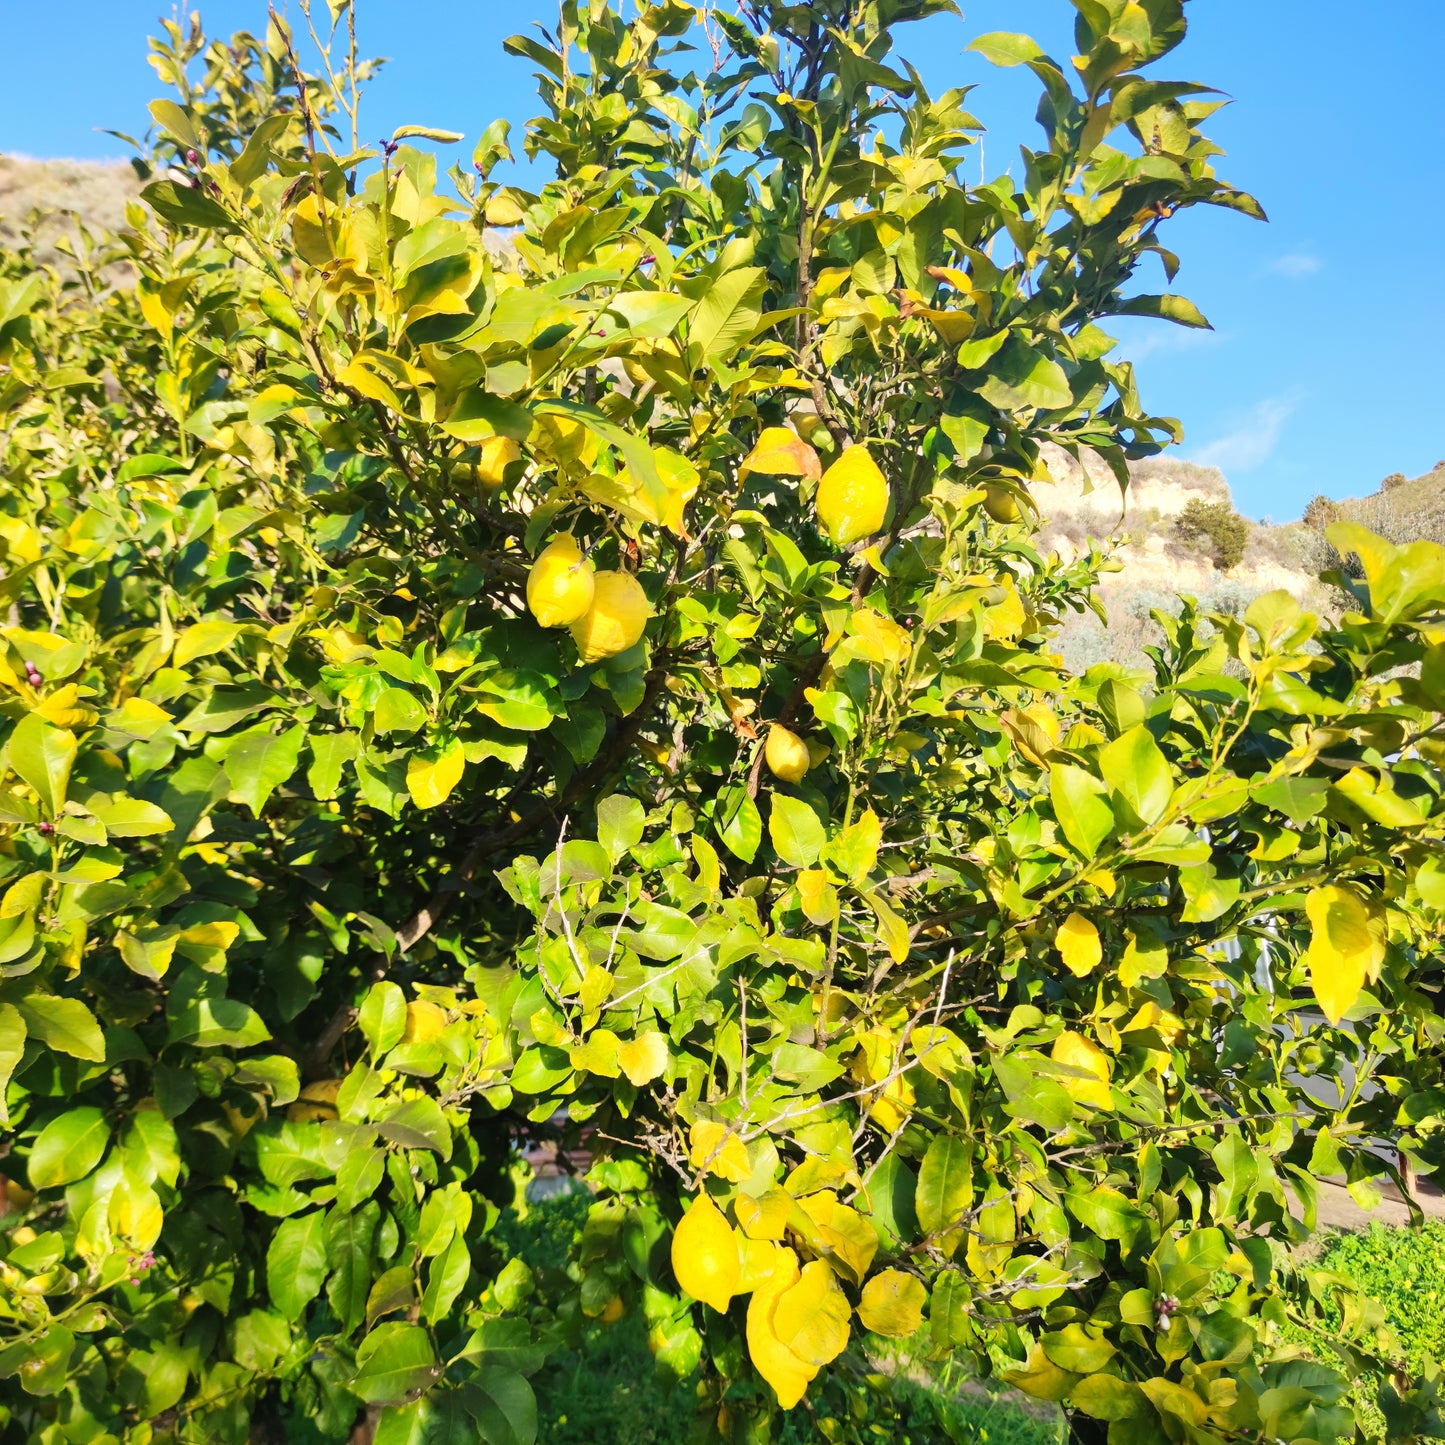 Limoni sardi non trattati coltivati in modo naturale, campagne di Sennori (SS)